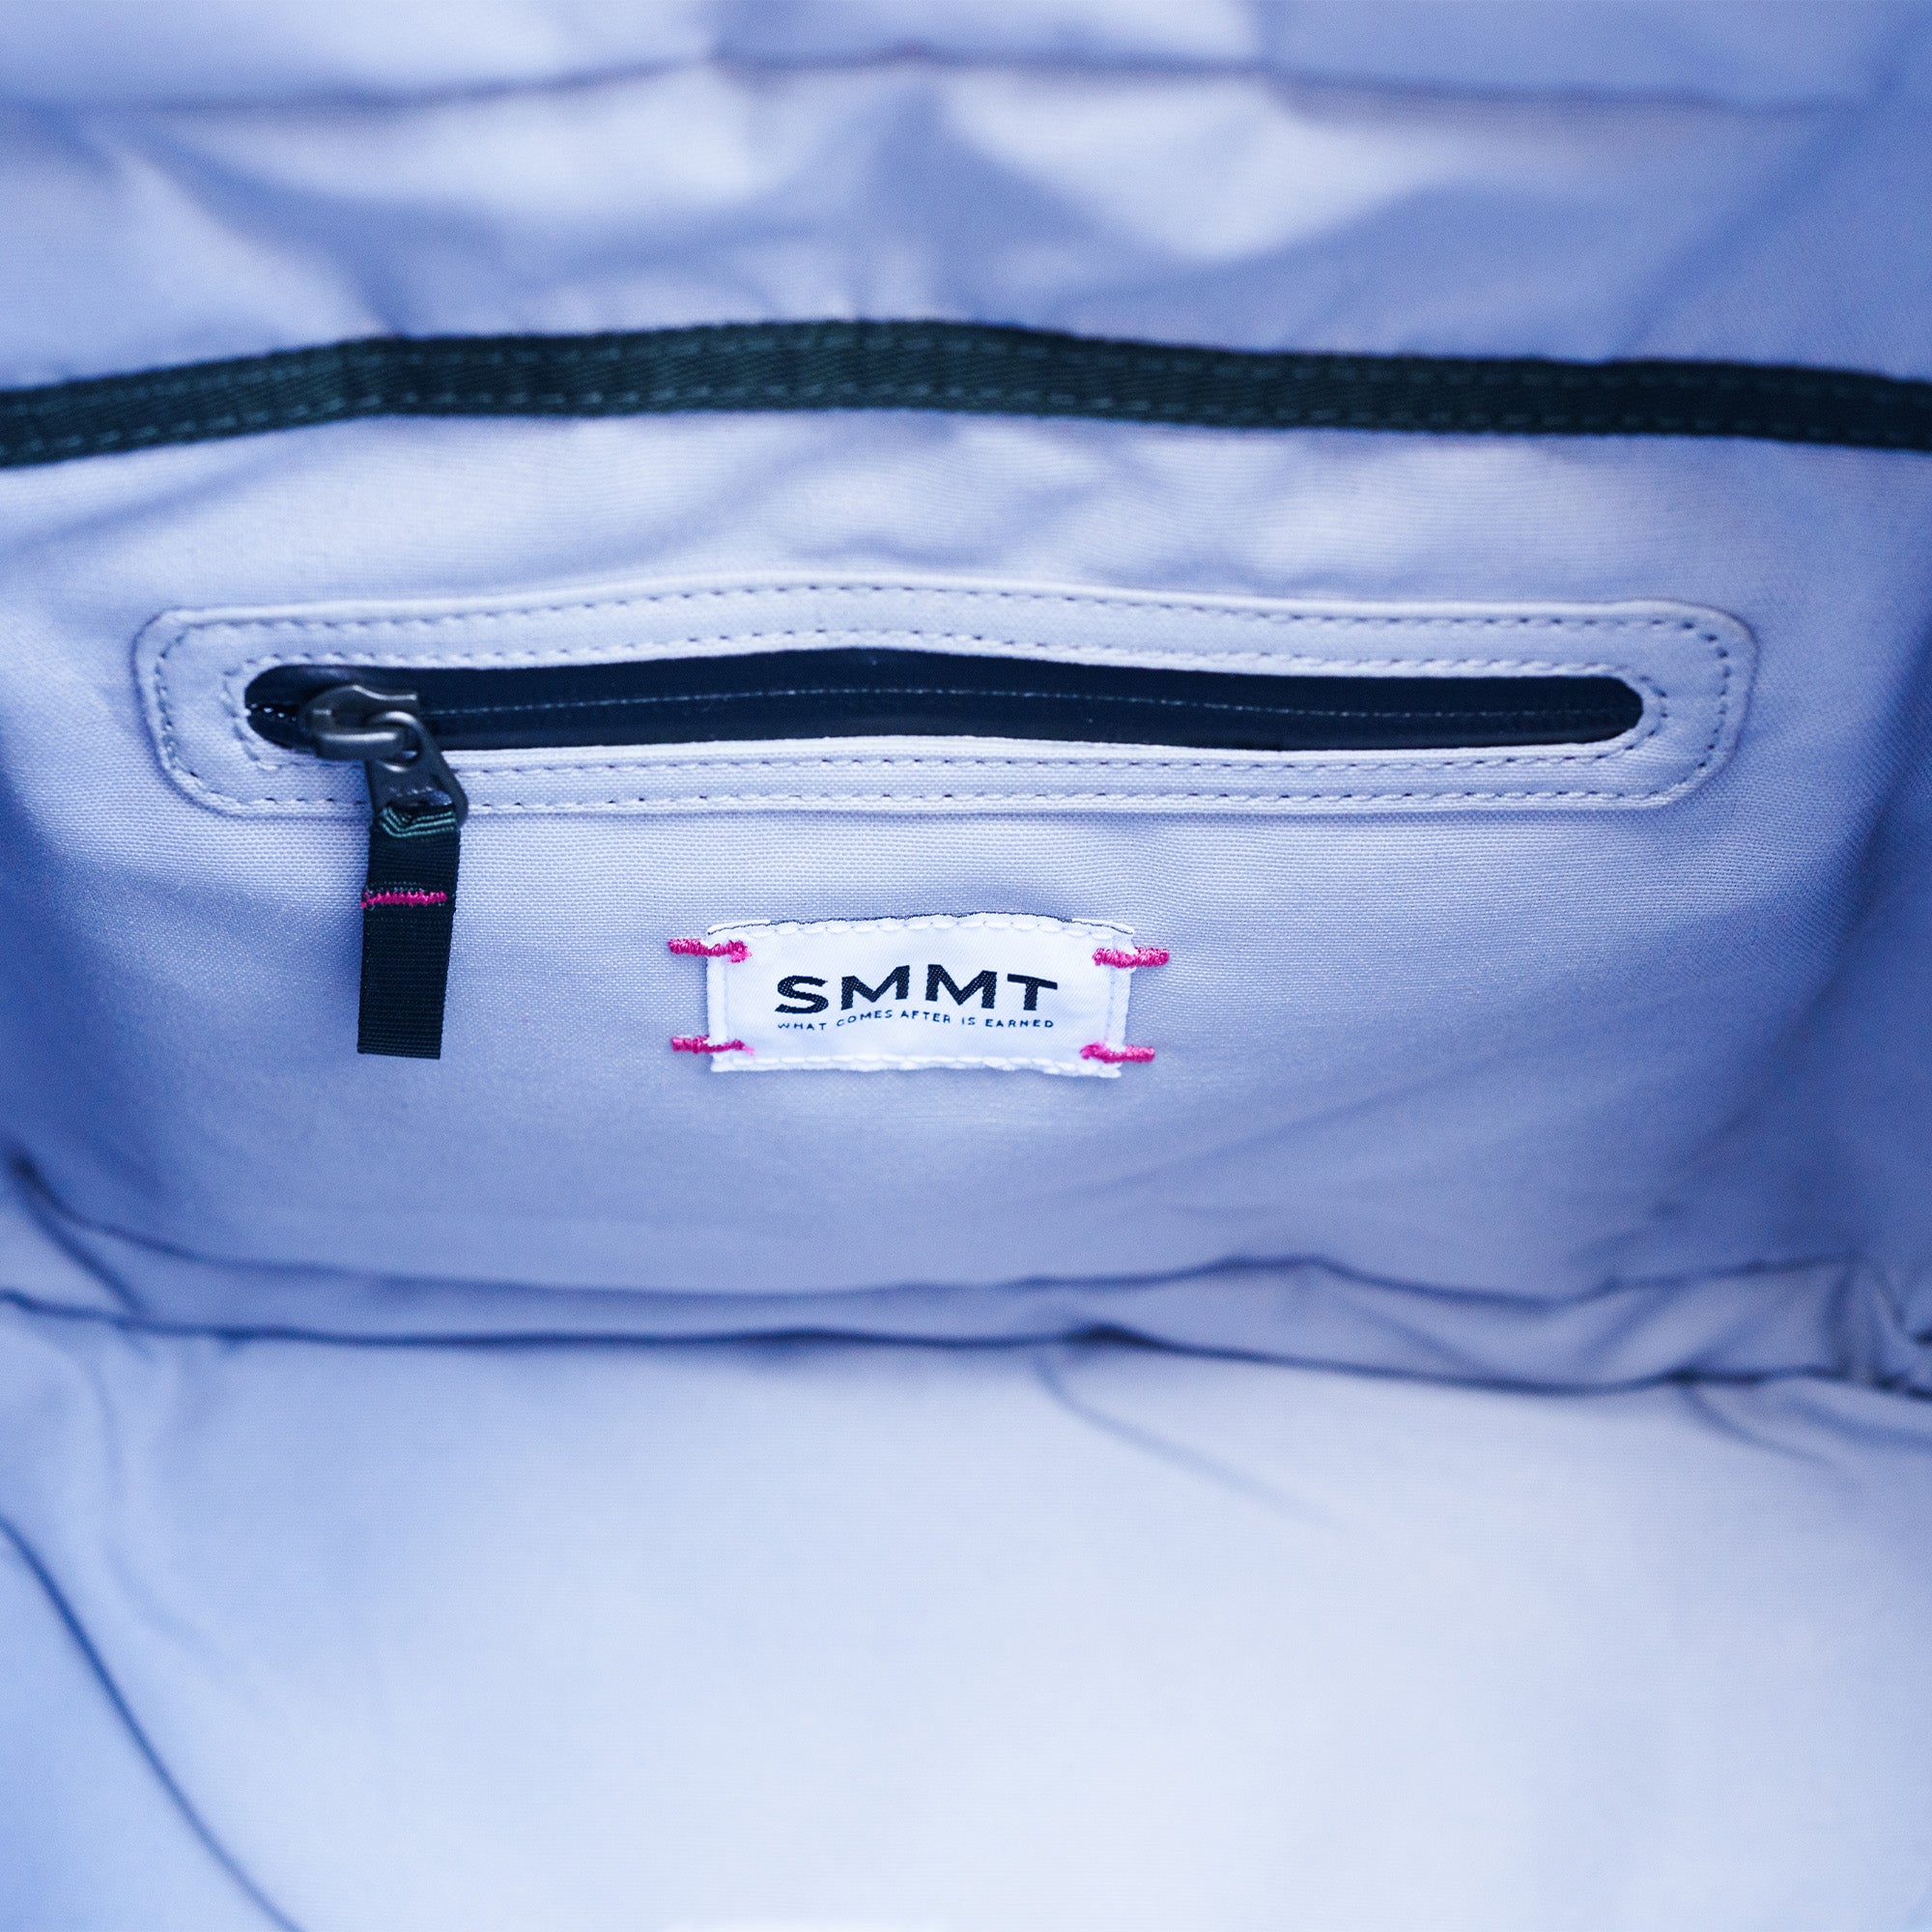 pink stitching details inside SMMT tote bag